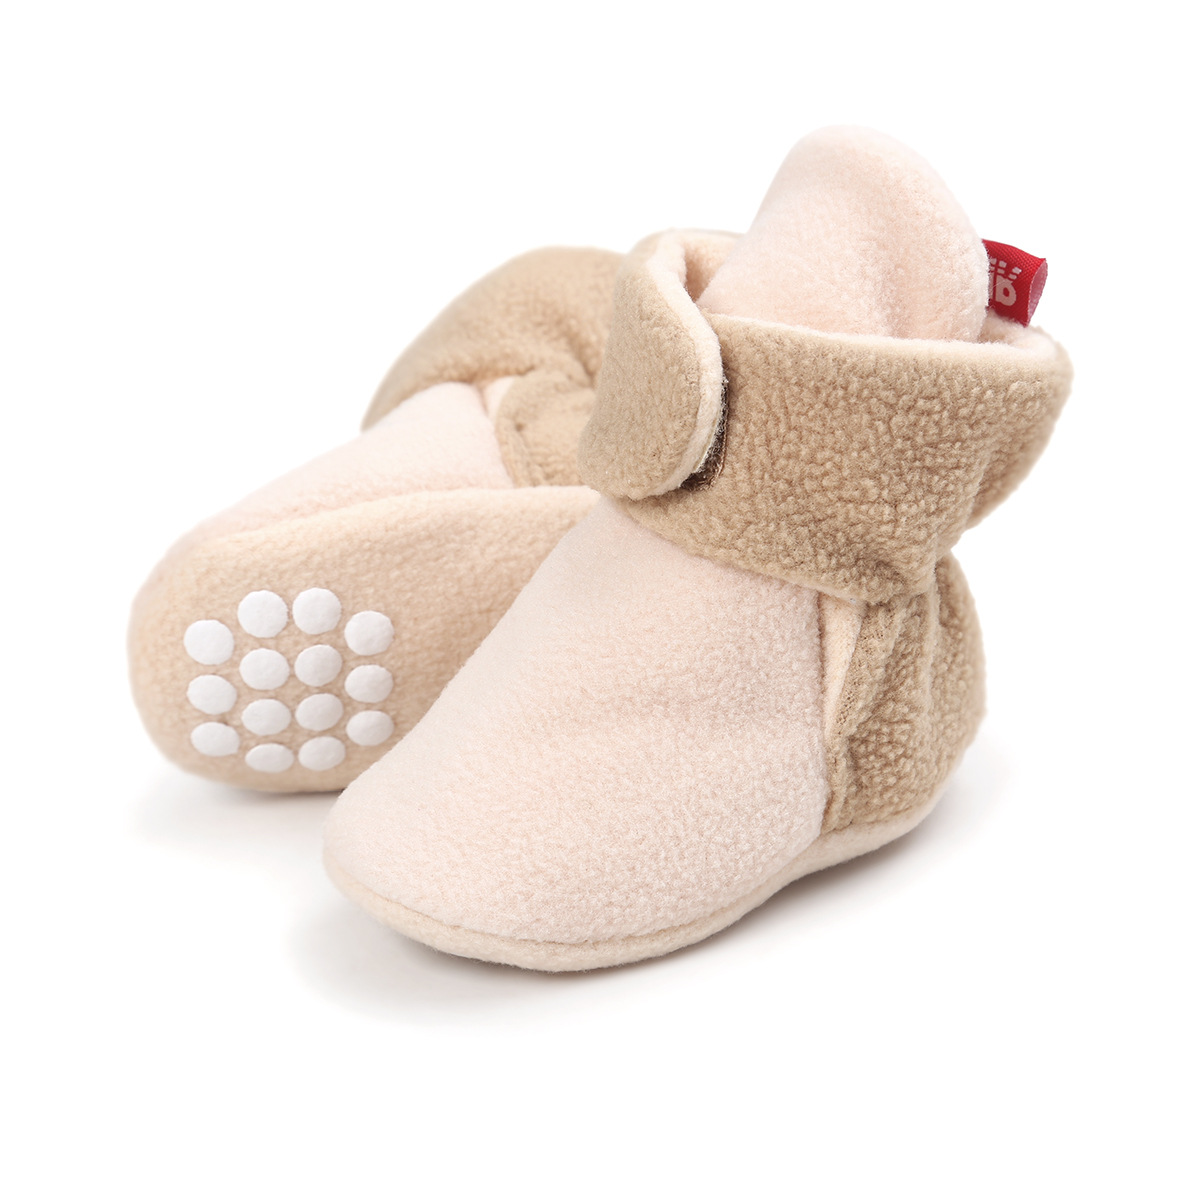 Chaussures bébé en coton - Ref 3436821 Image 56